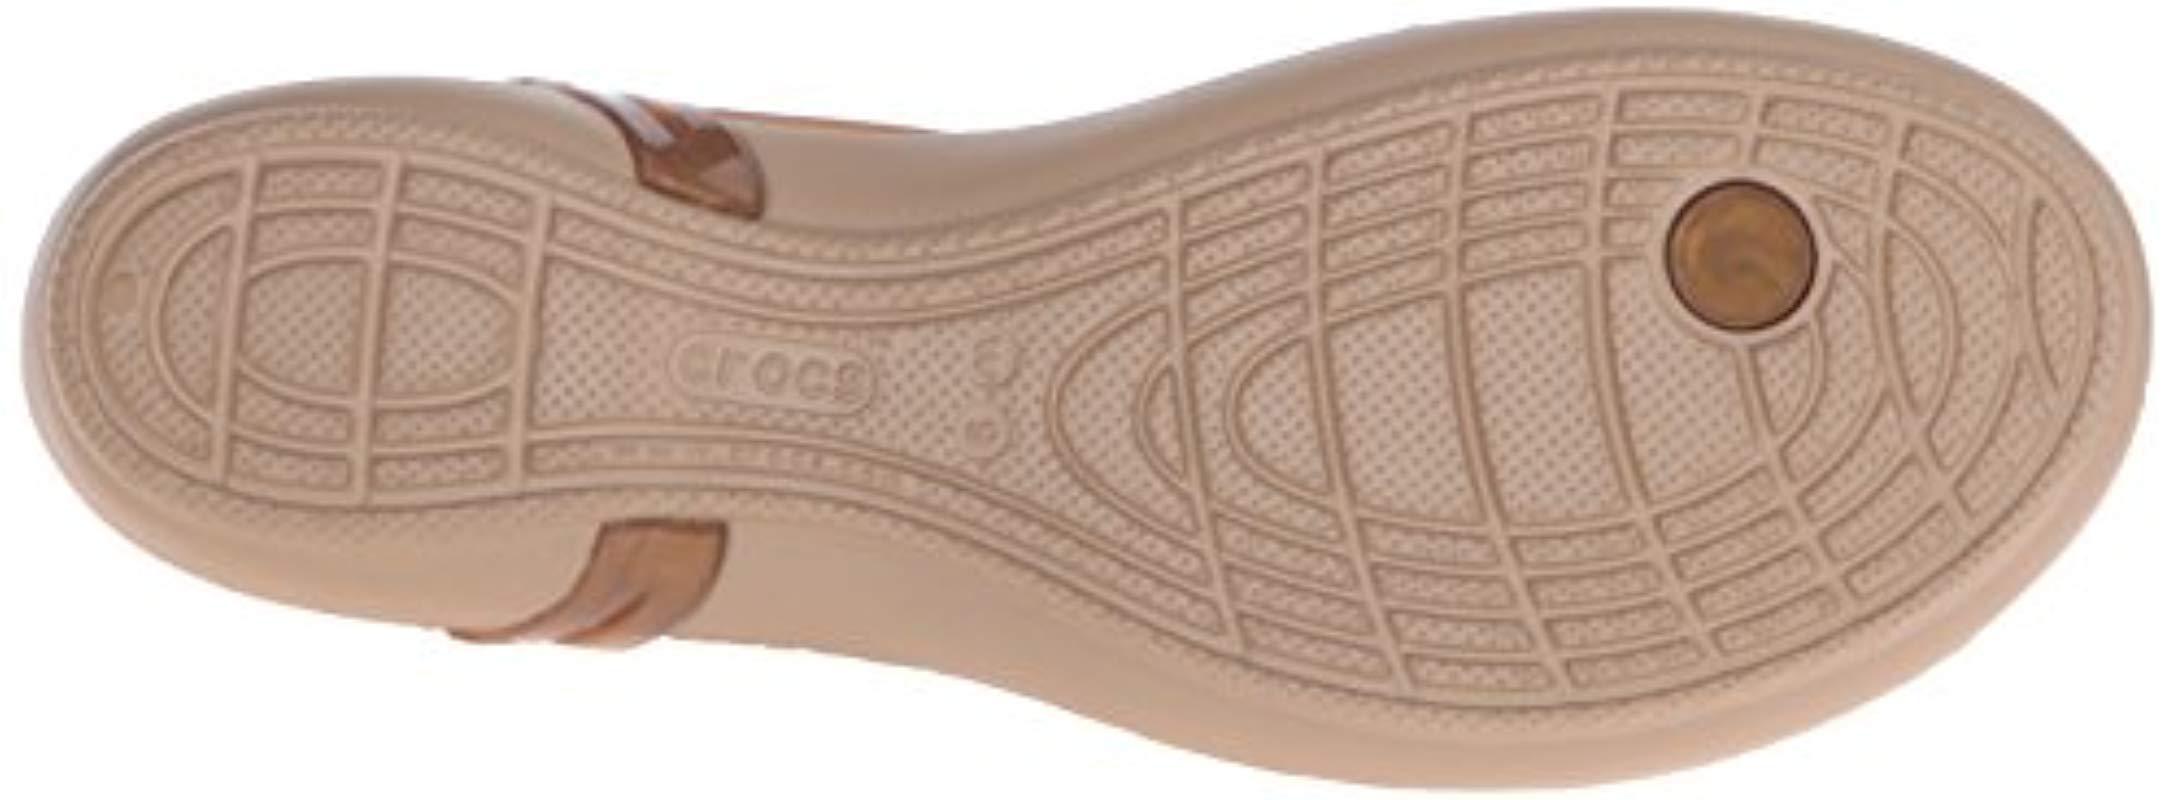 Crocs™ Isabella T-strap Sandals | Lyst